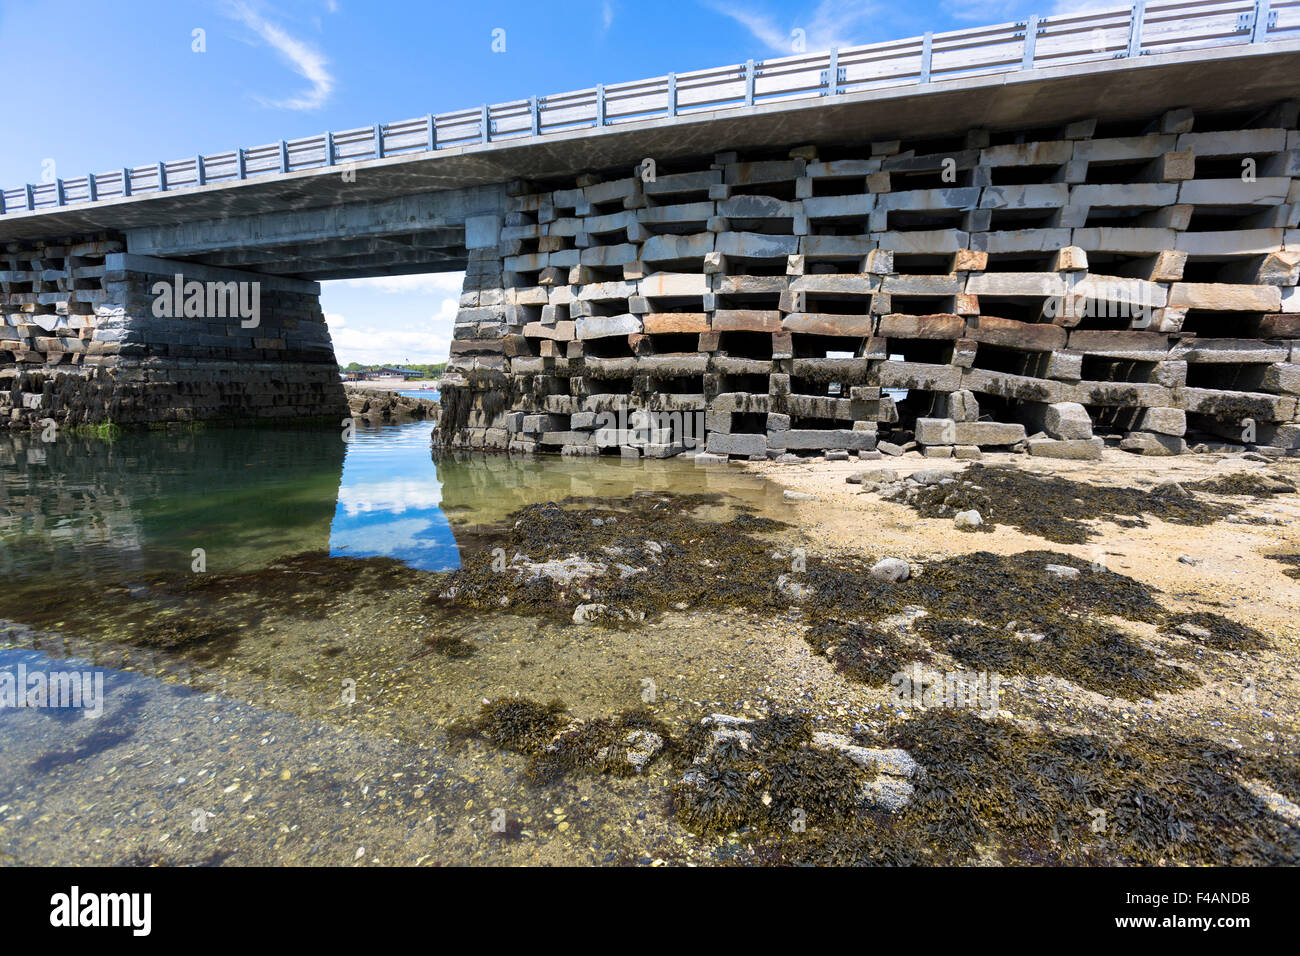 Puente entre Cribstone Orr's Island y Bailey isla construida de granito encofrado abierto permitiendo la marea de flujo y reflujo libremente Foto de stock